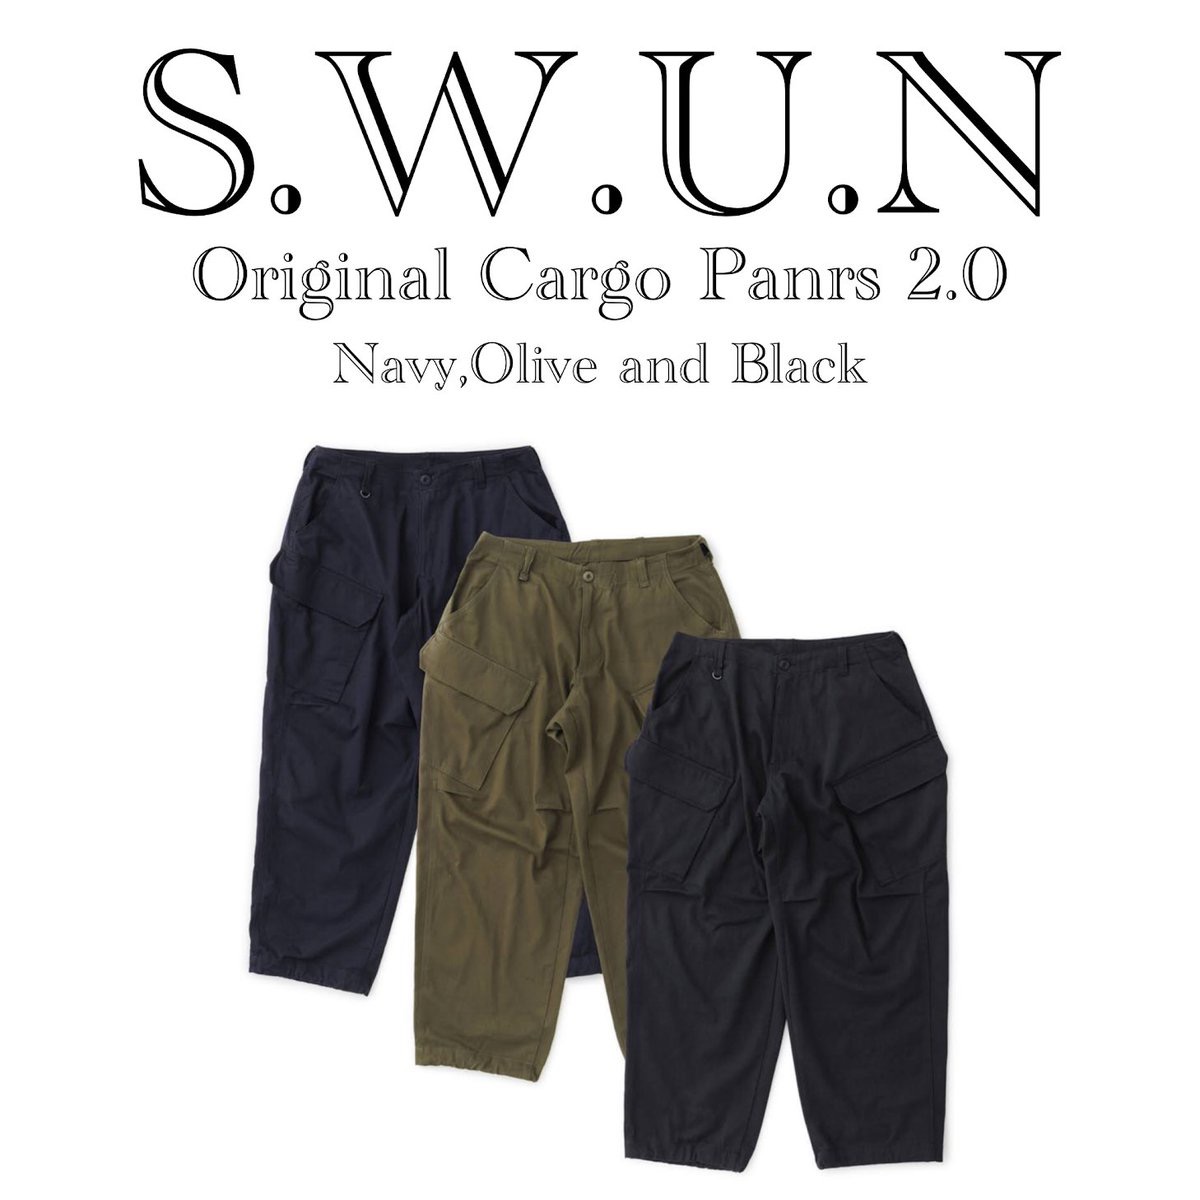 S.W.U.N Original Cargo Pants 2.0